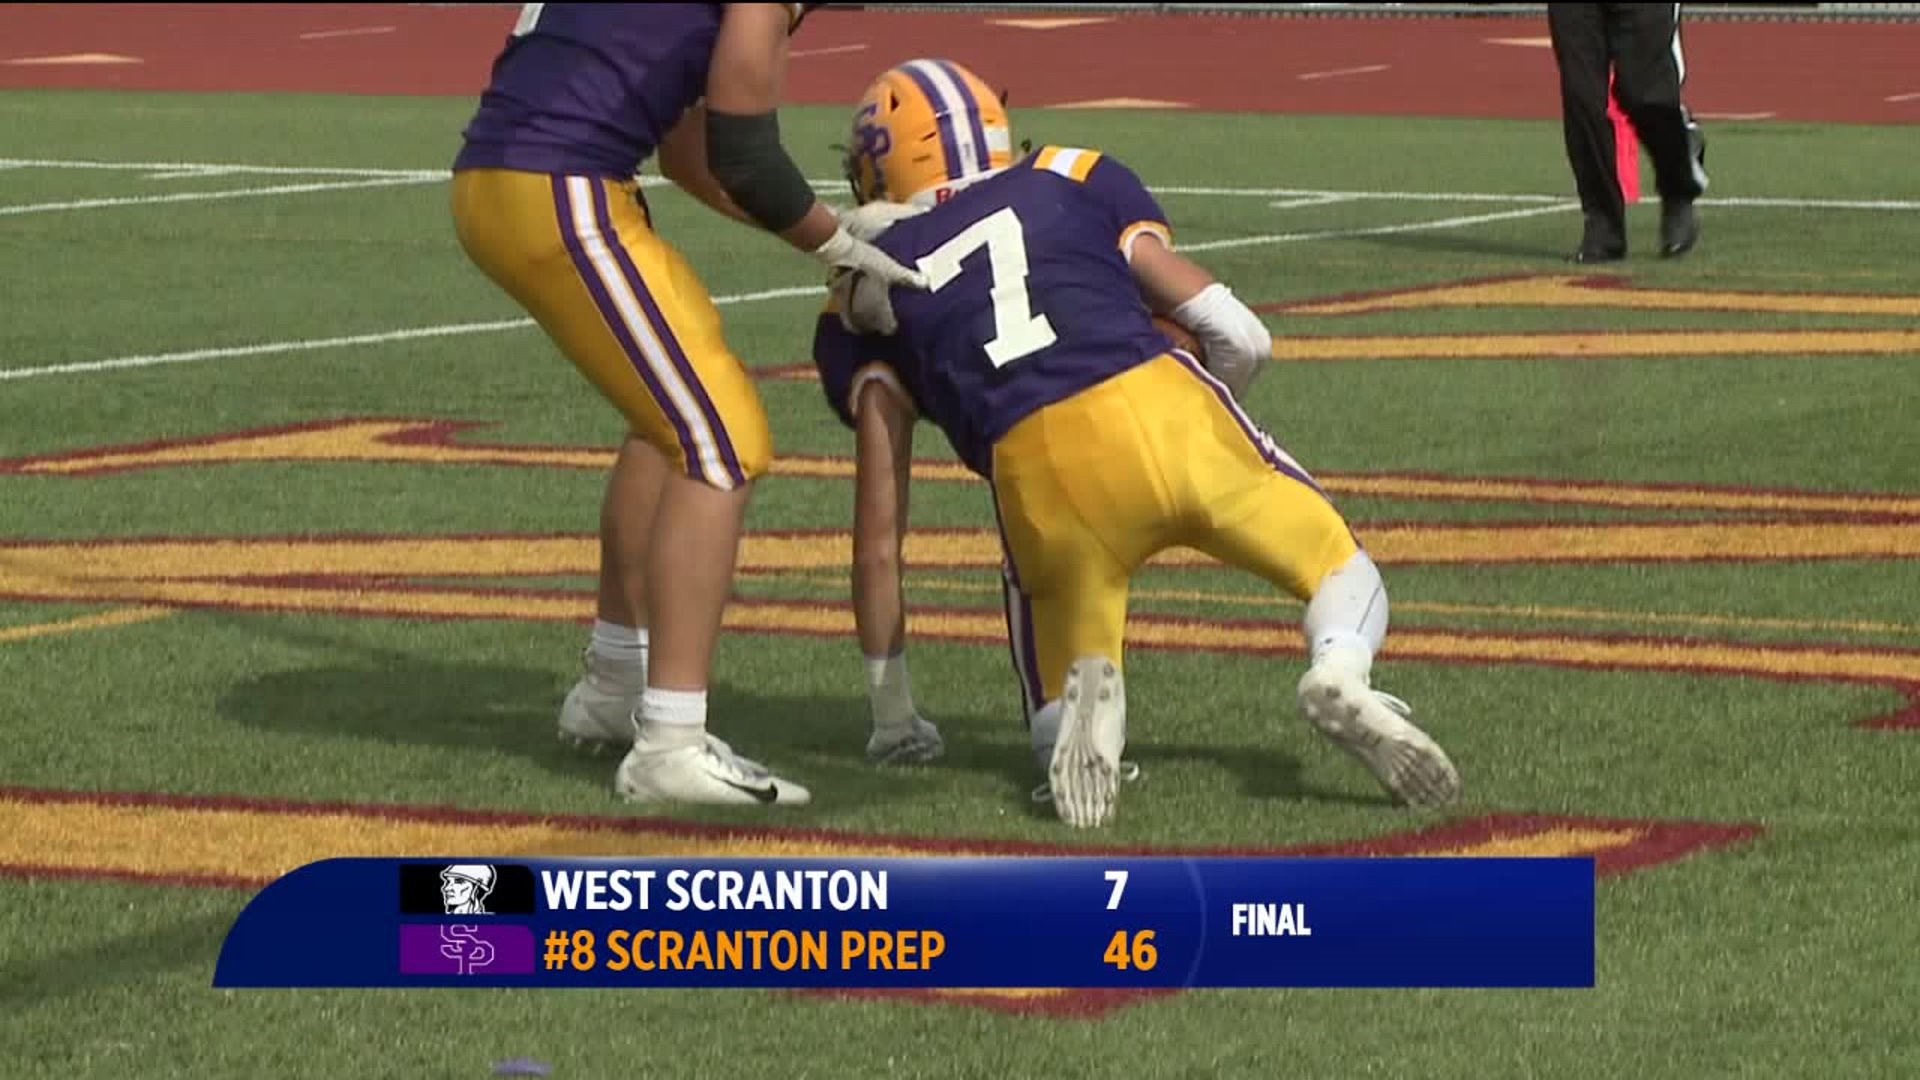 Scranton Prep Rebounds with 46-7 Win Over West Scranton